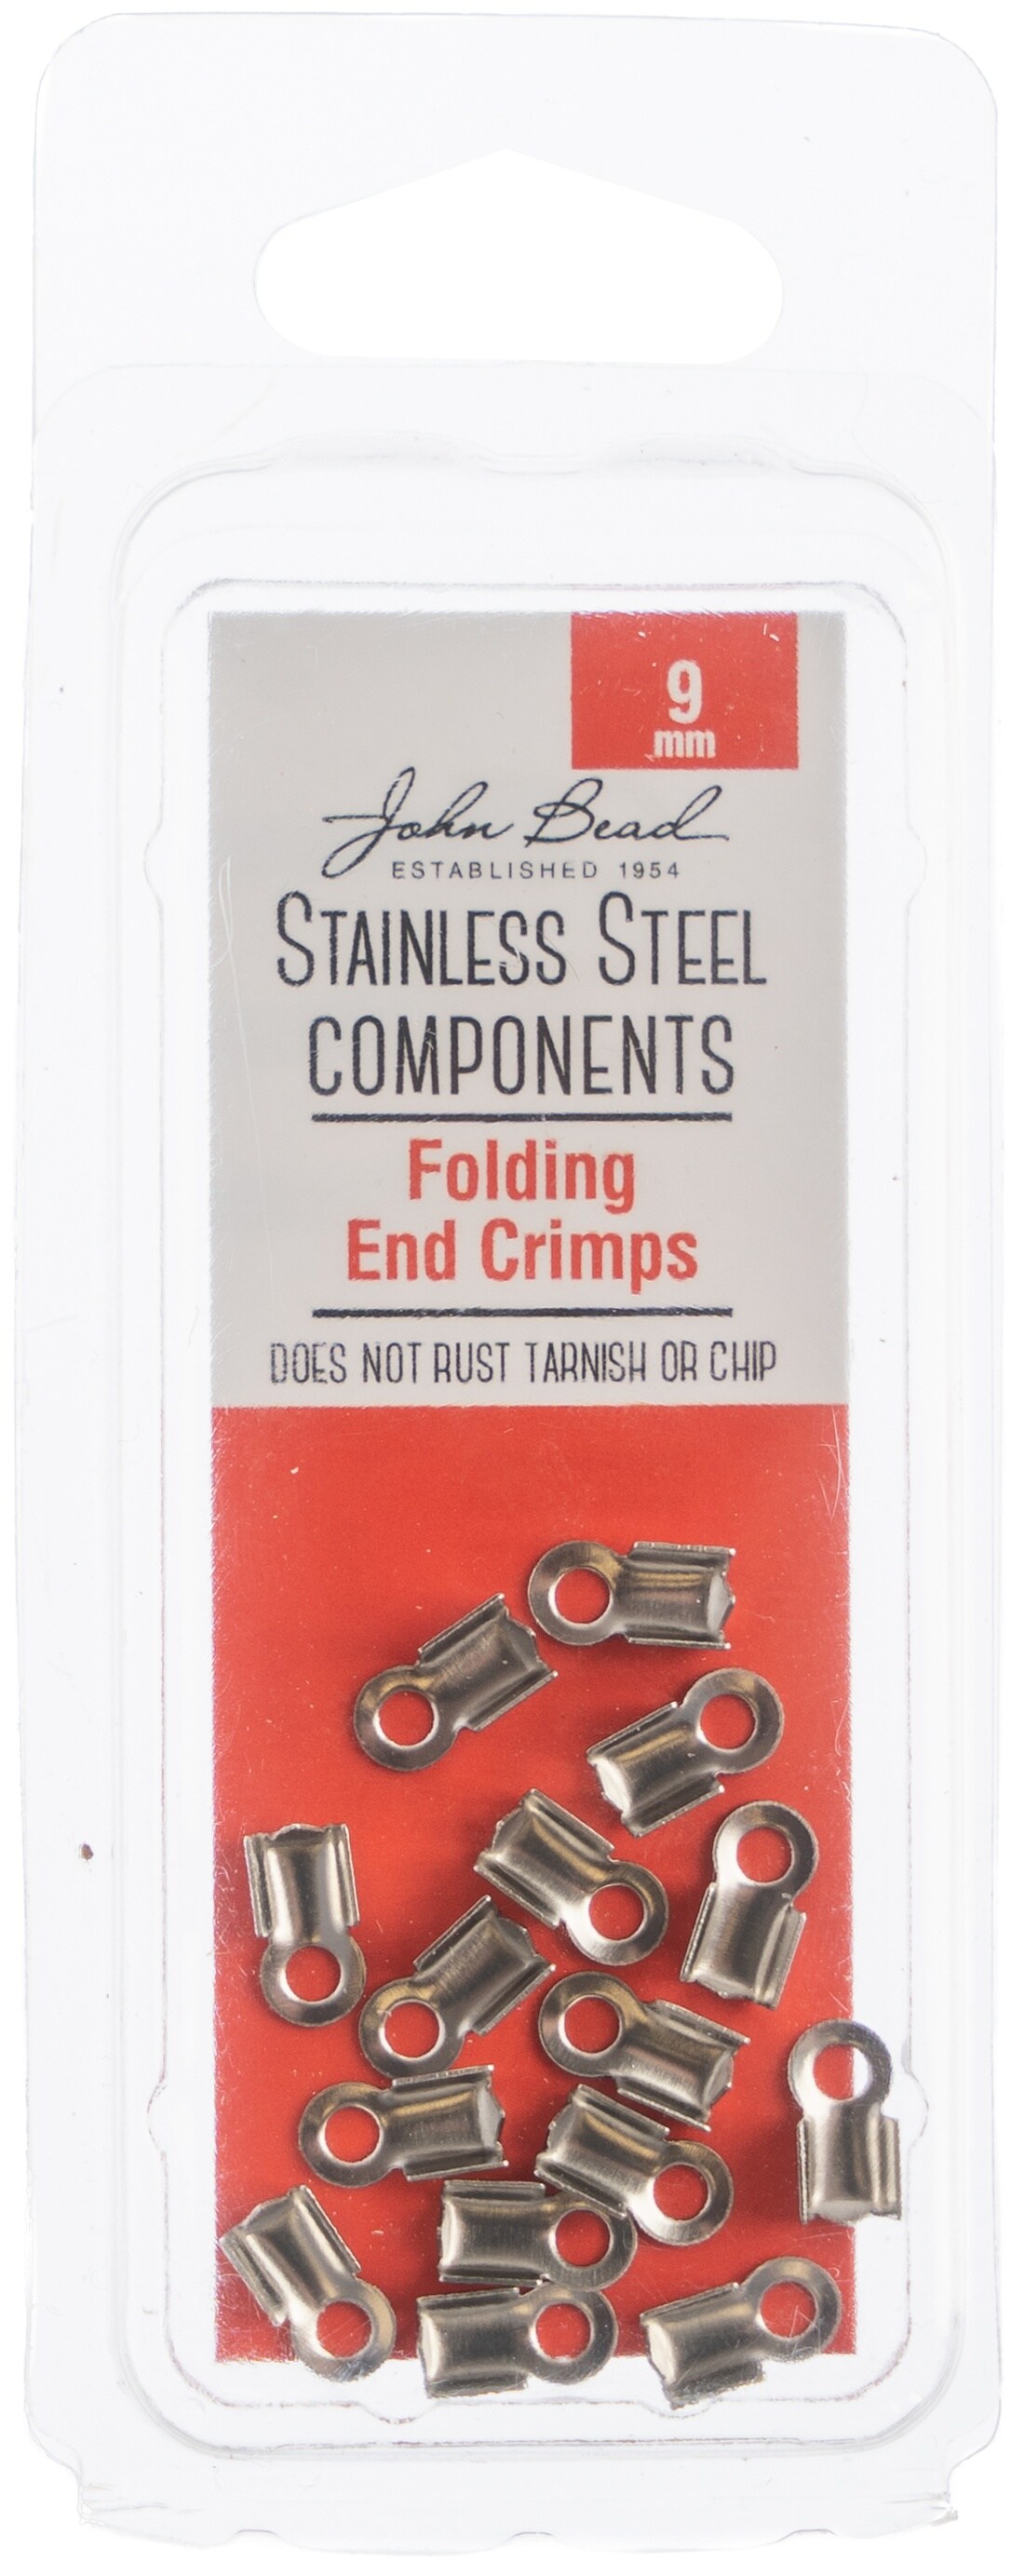 John Bead Stainless Steel Folding End Crimp 15/Pkg-9mm